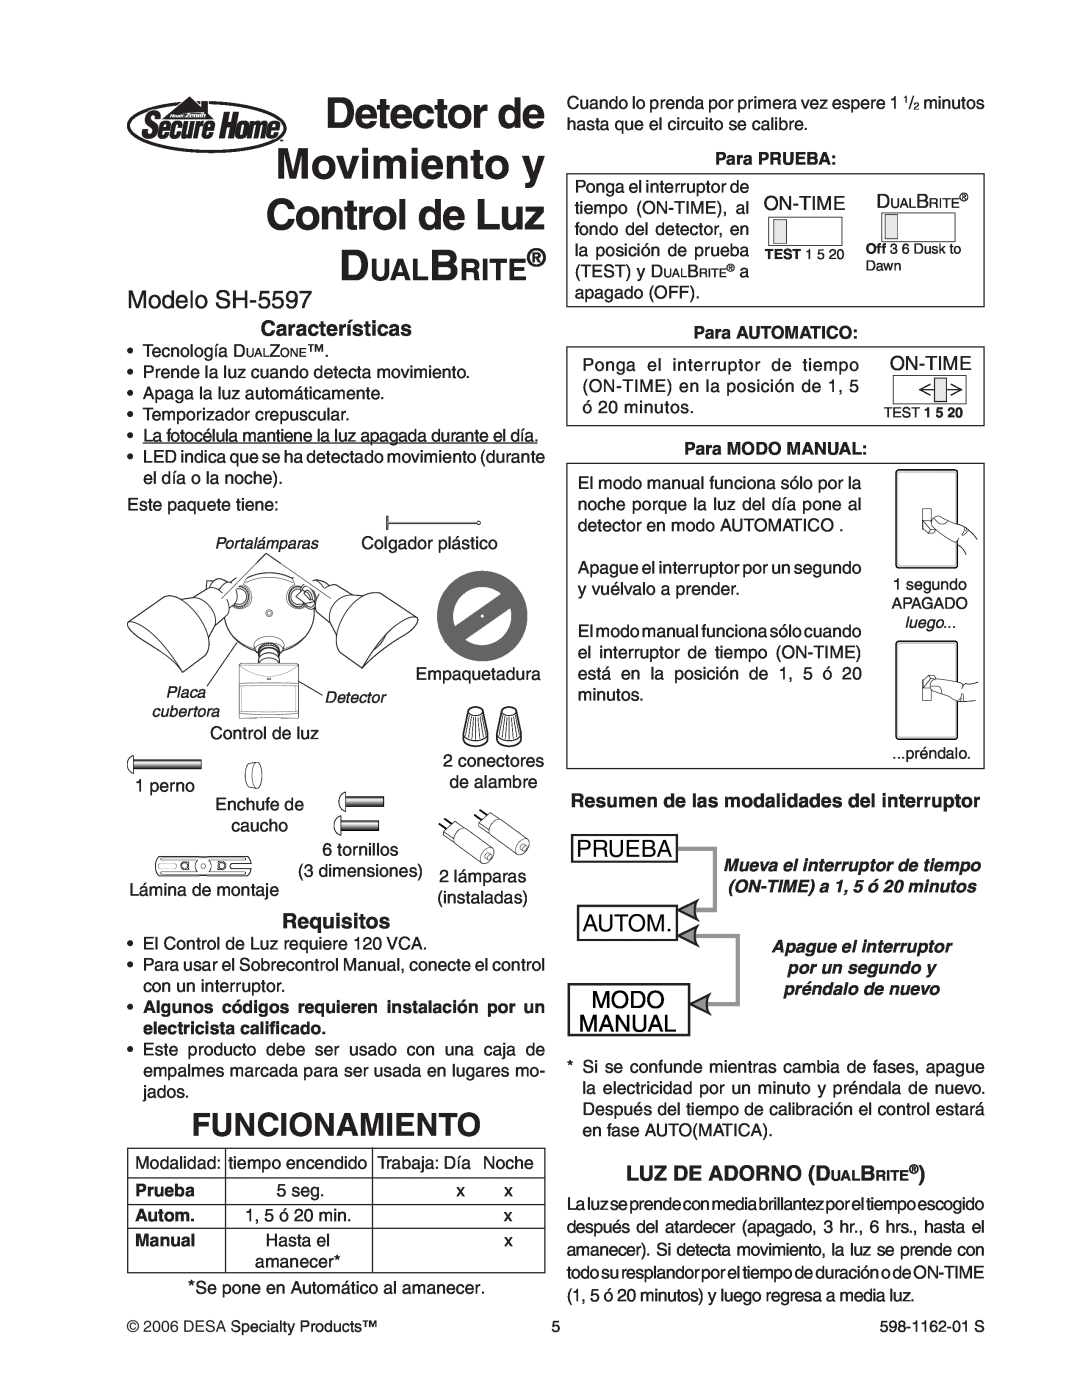 Desa Detector de Movimiento y Control de Luz, Funcionamiento, Modelo SH-5597, Características, Requisitos, Prueba, Modo 